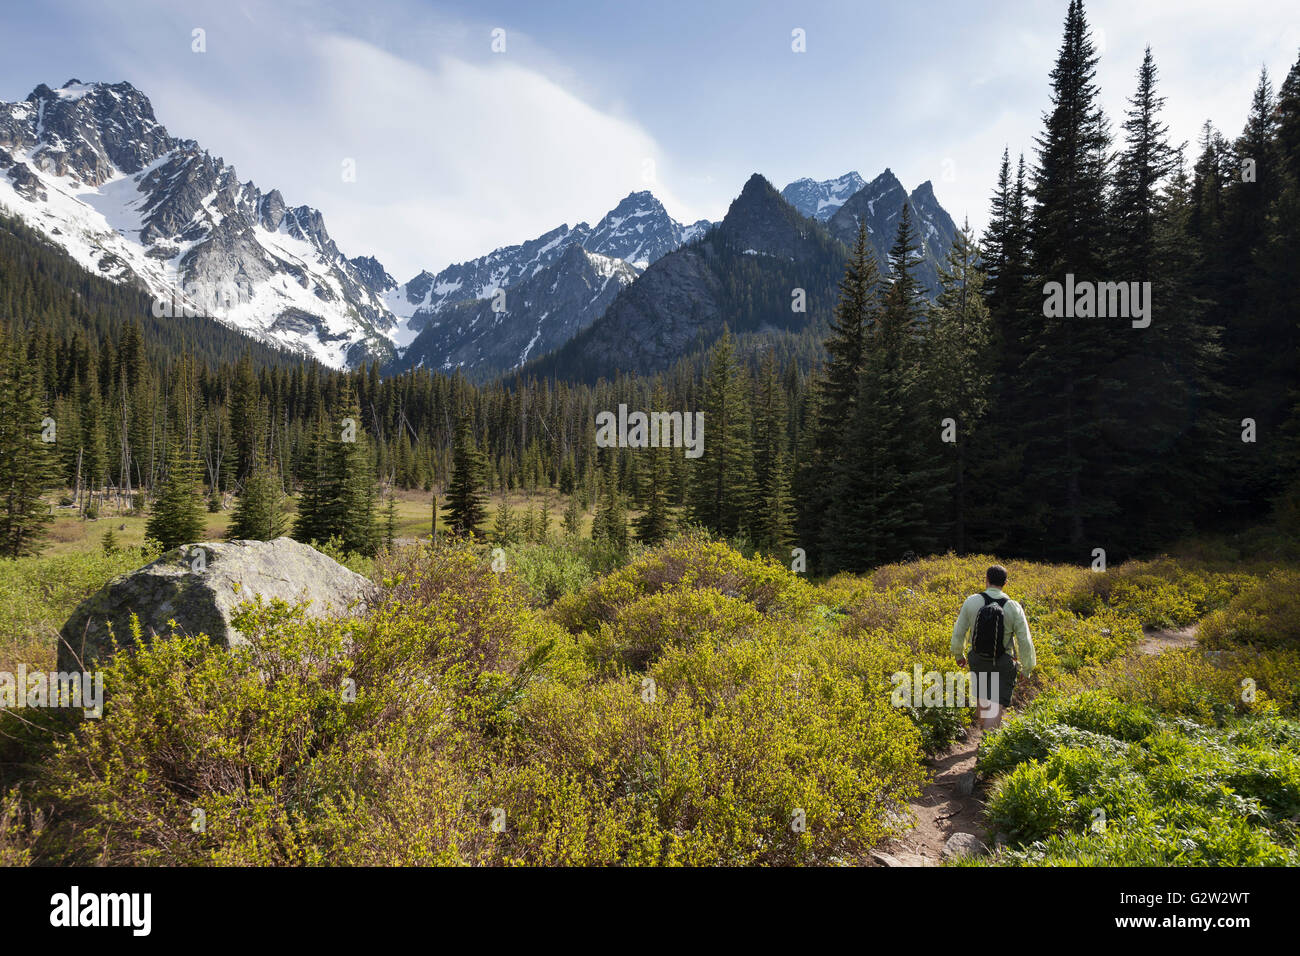 Alpine Lakes Wilderness, Washington: Man hiking the Stuart Lake Trail along the Stuart Range. Stock Photo